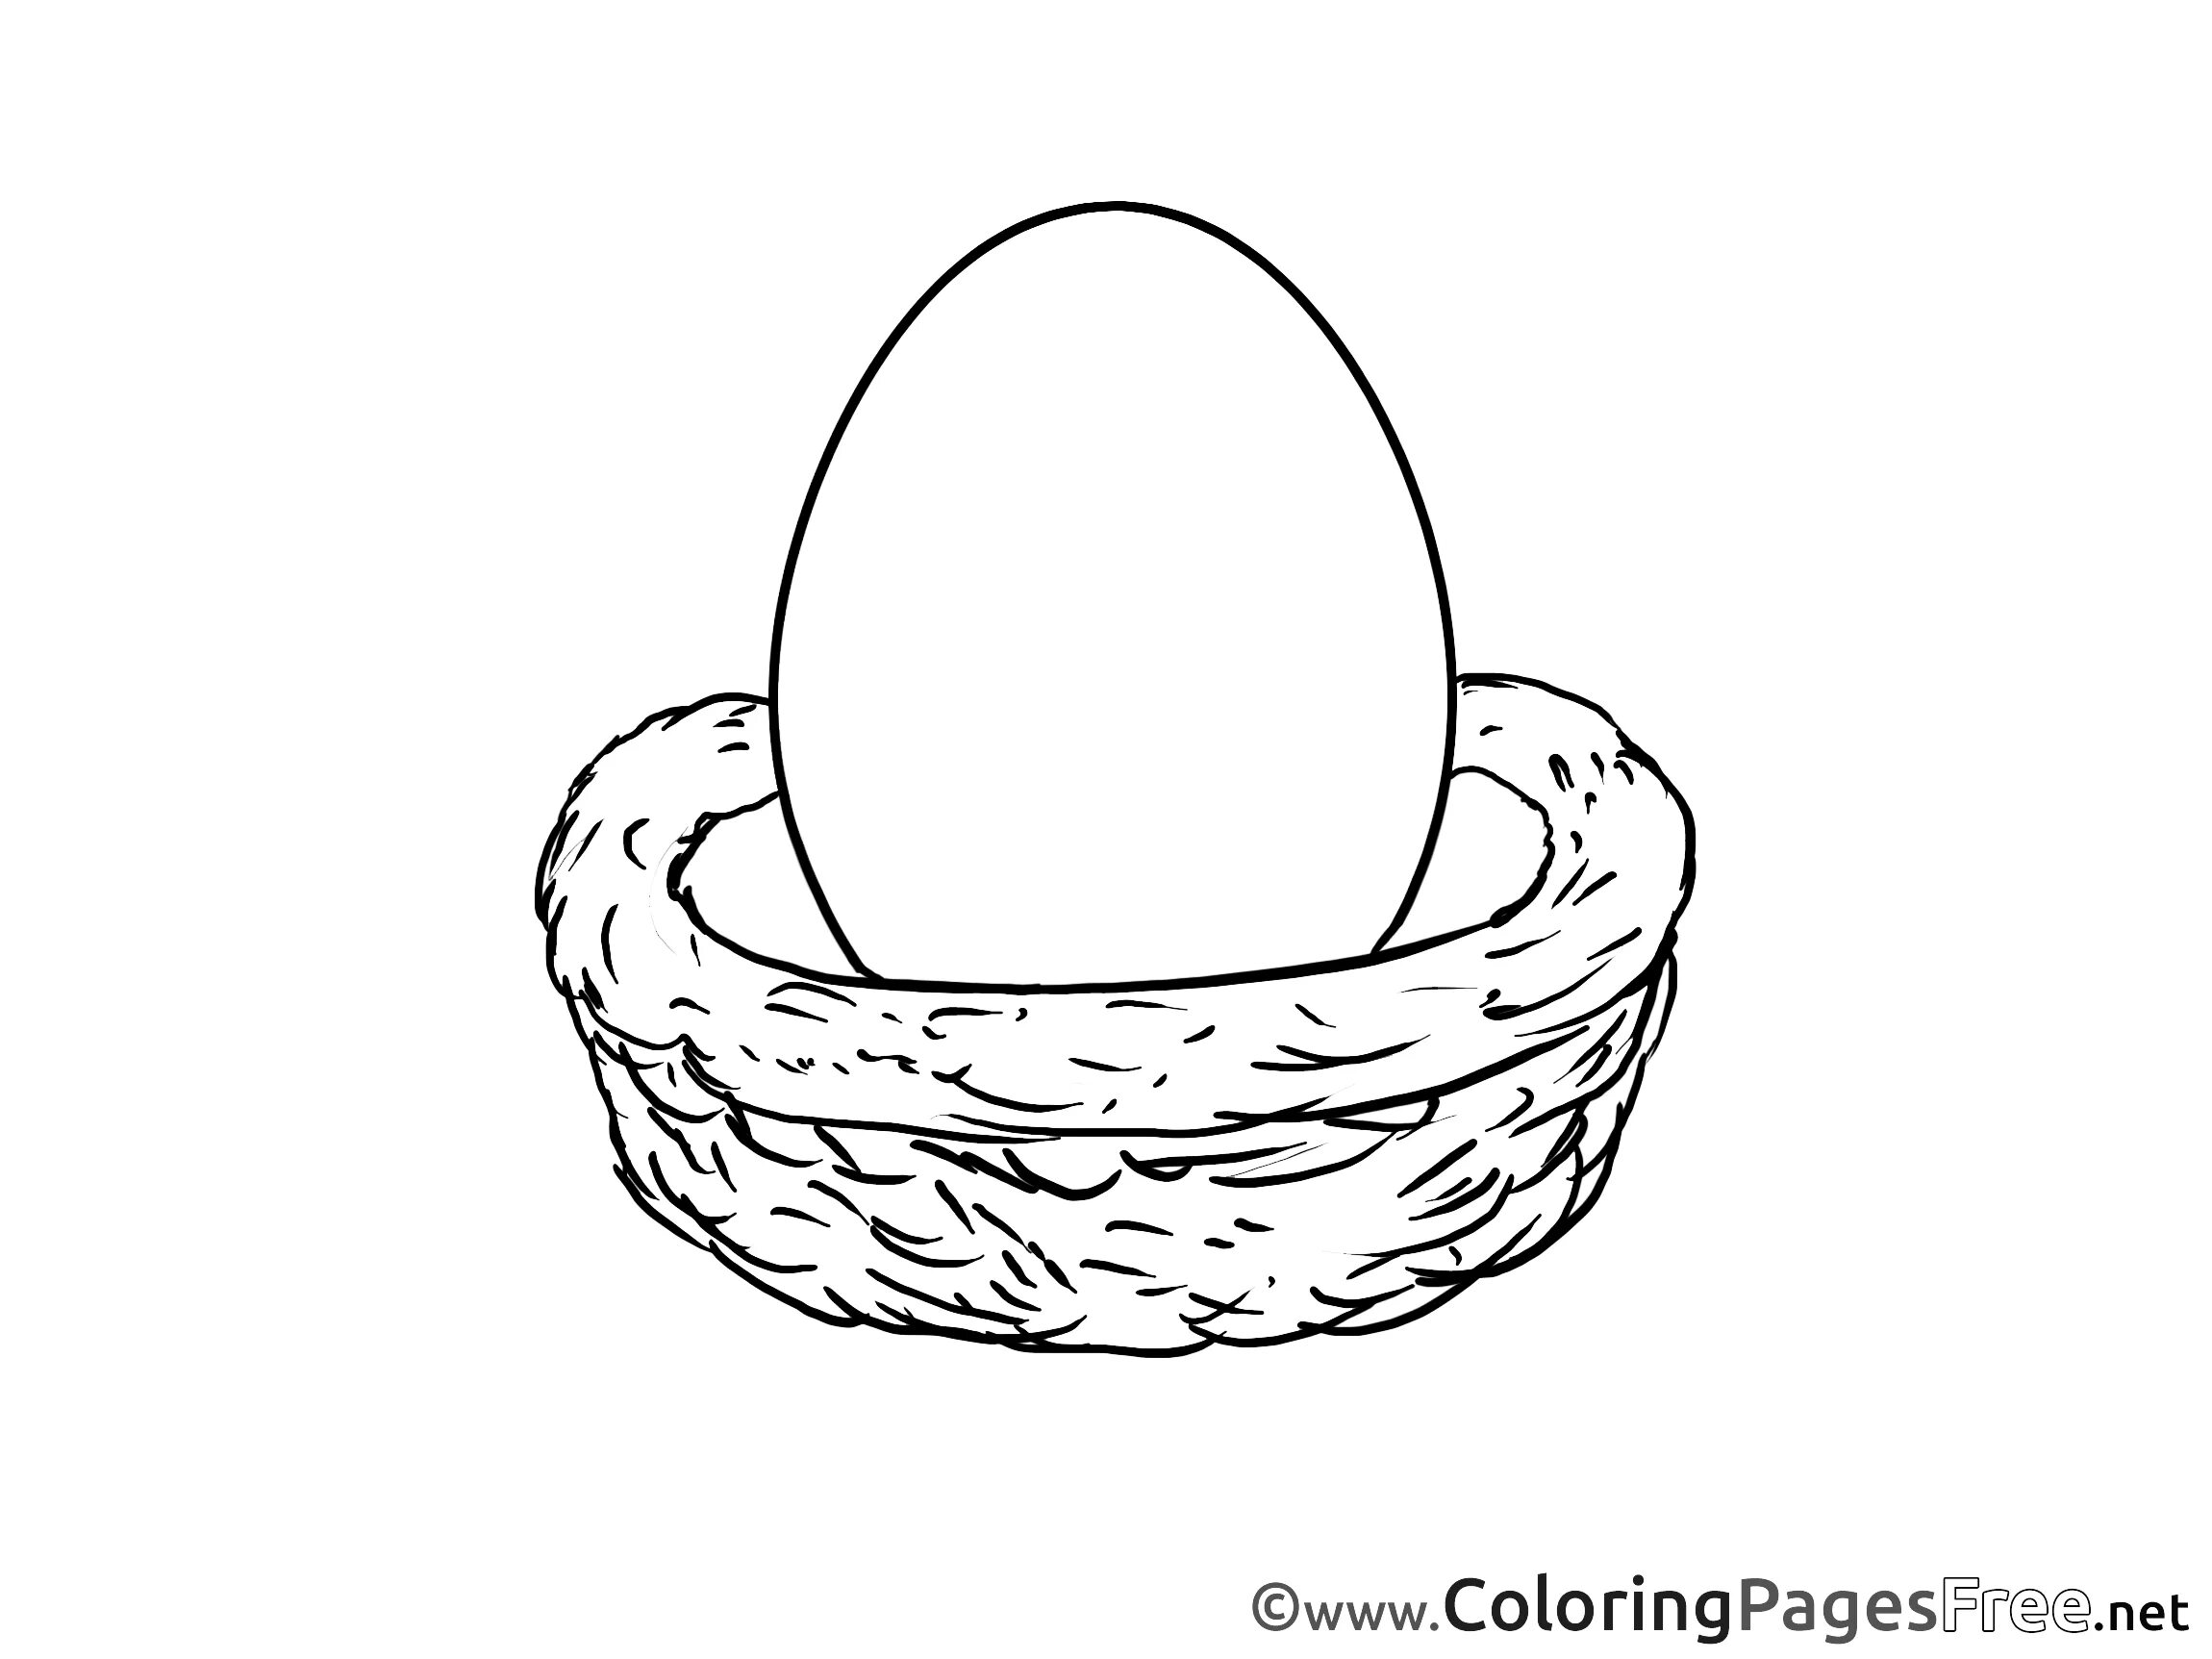 Раскраска. Гнездо раскраска. Раскраска гнездо с яйцами. Гнездо раскраска для детей. Распечатать раскраску яйца